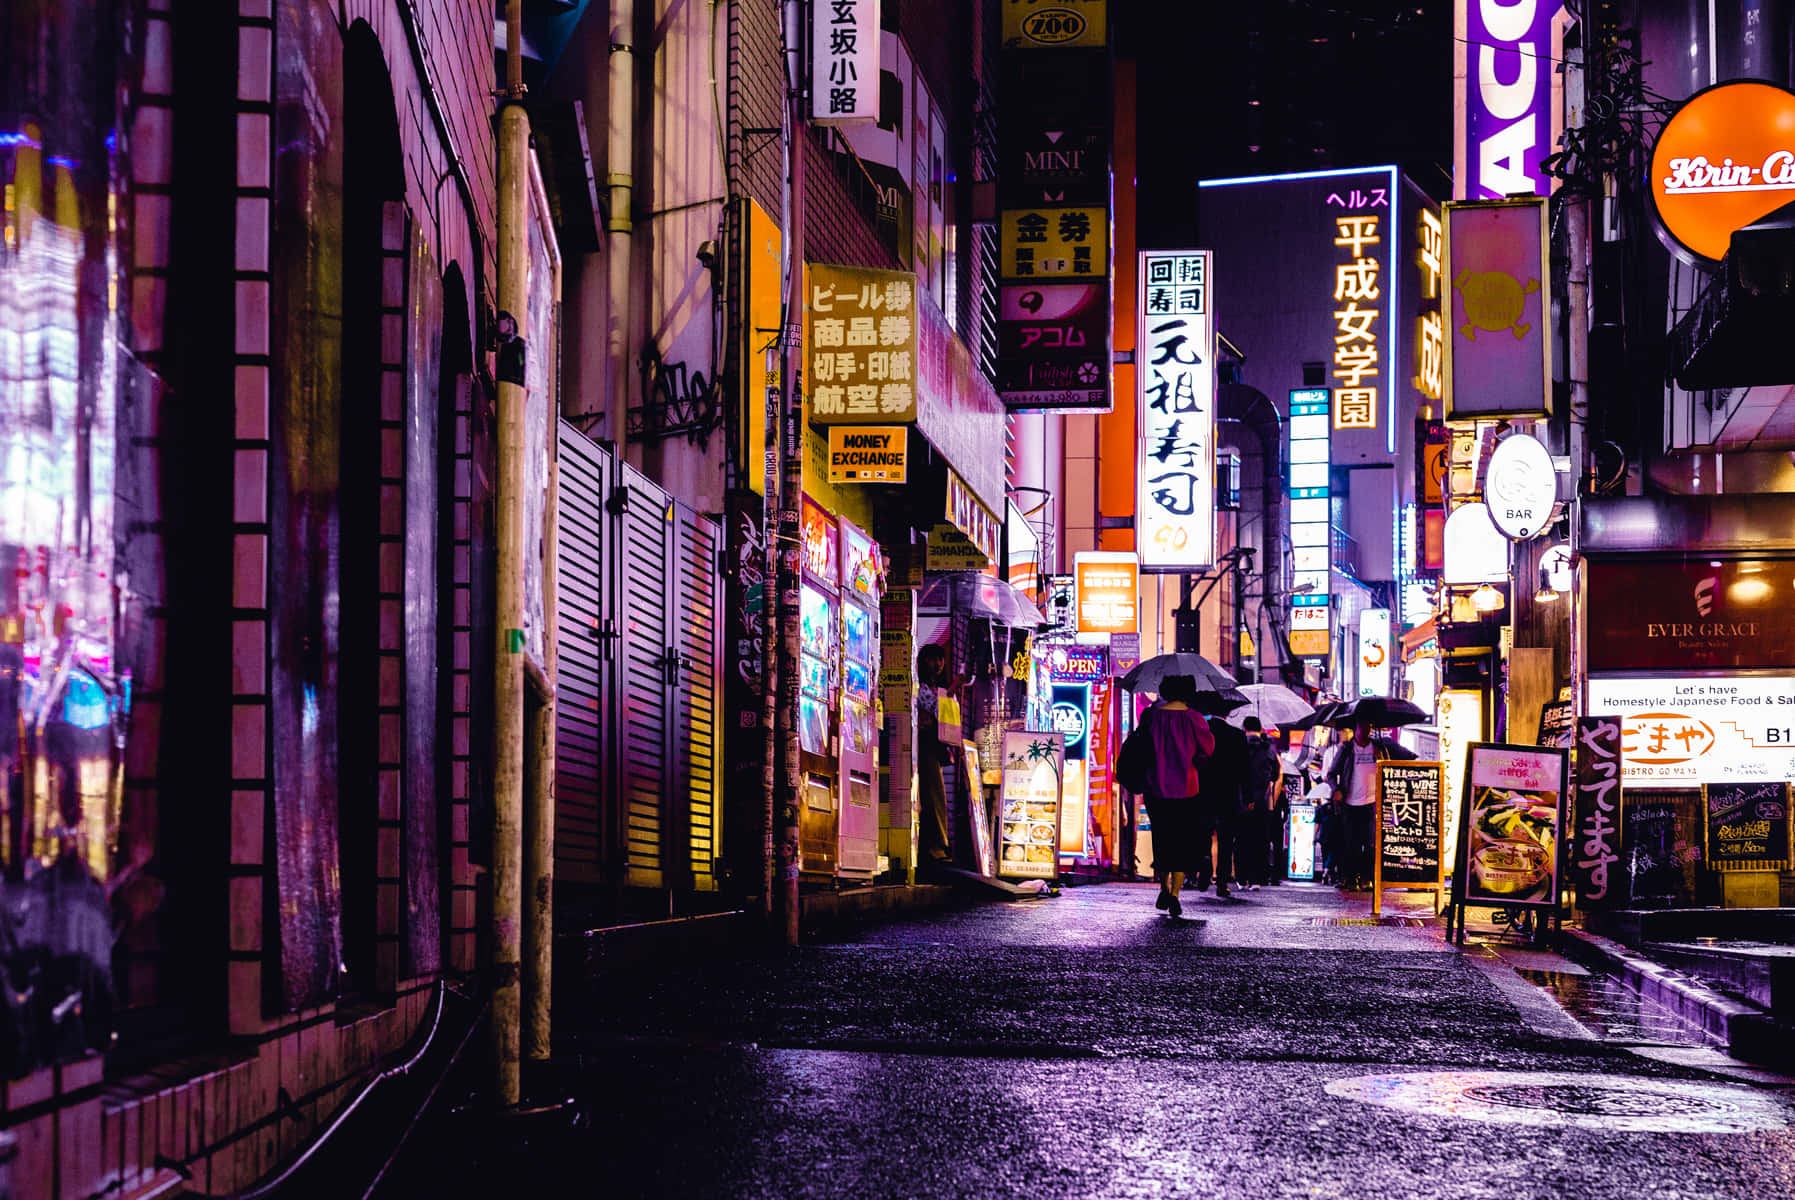 Laanimada Escena De La Calle Japonesa De Tokio Fondo de pantalla